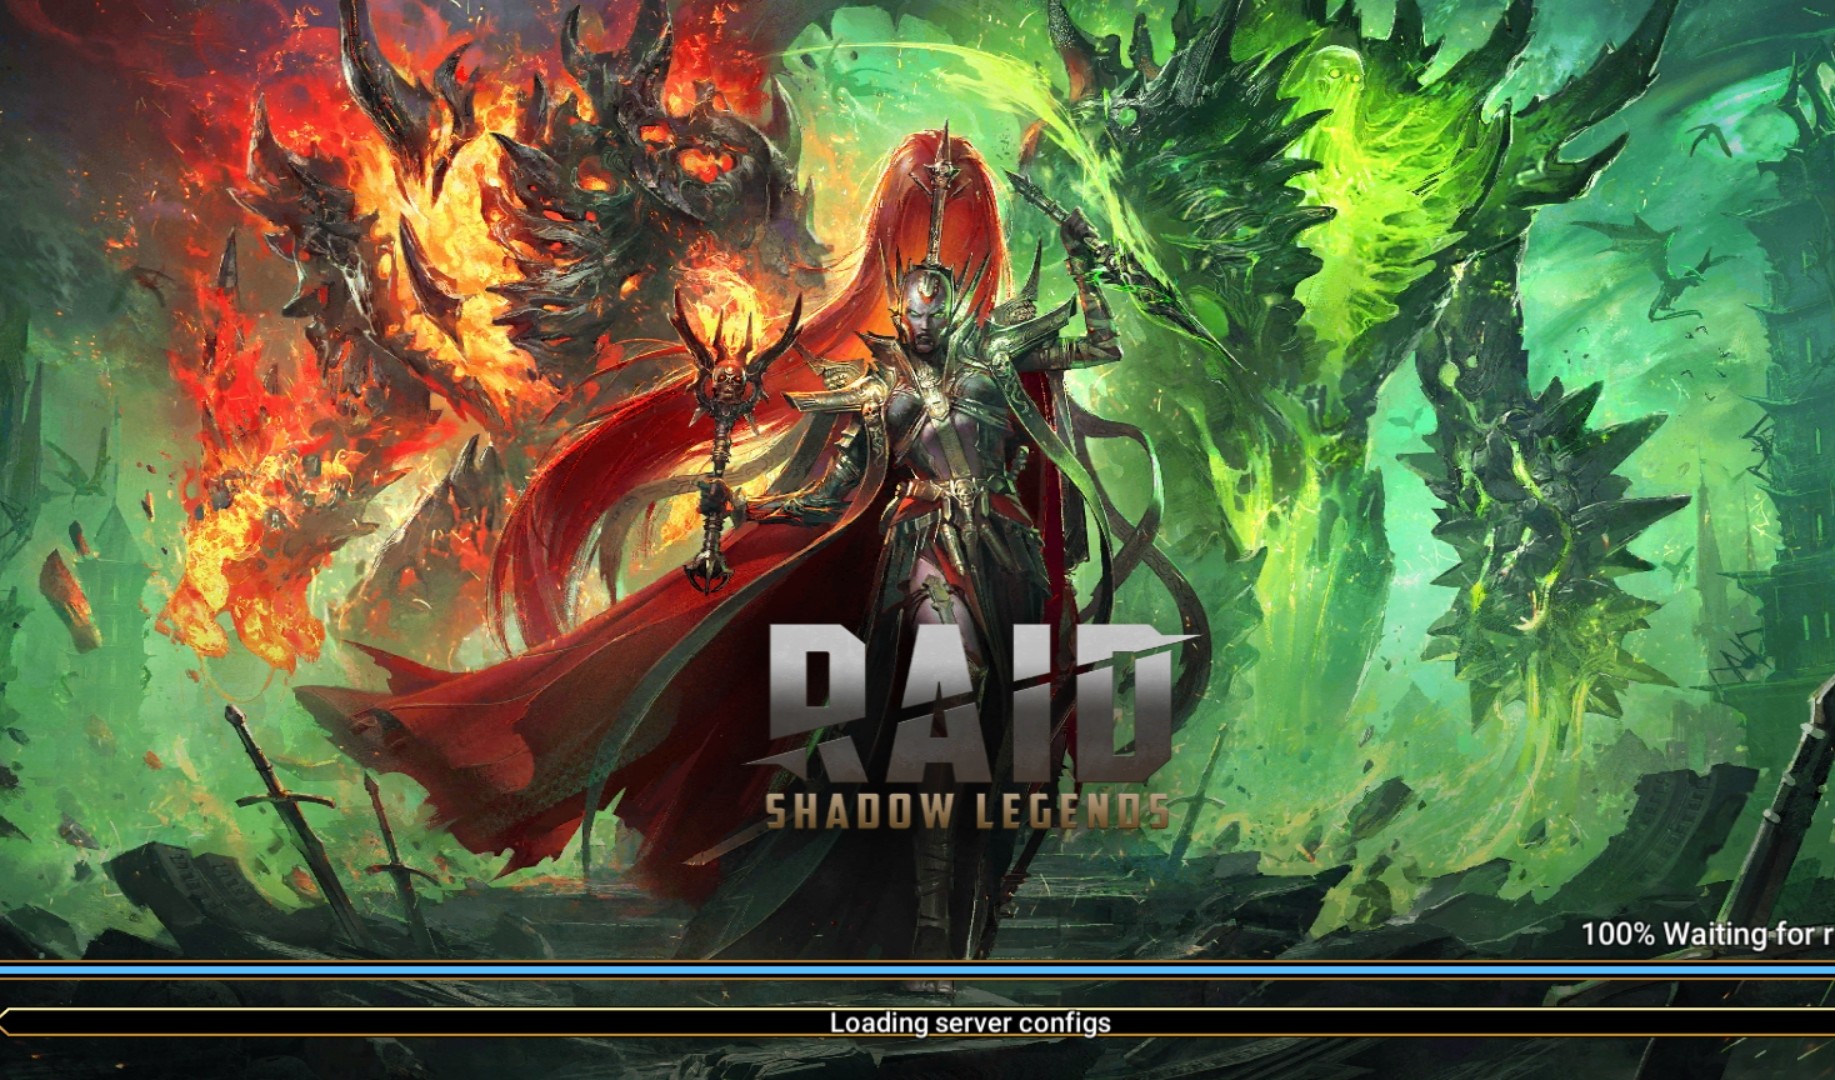 raid shadow legends mod apk unlimited everything